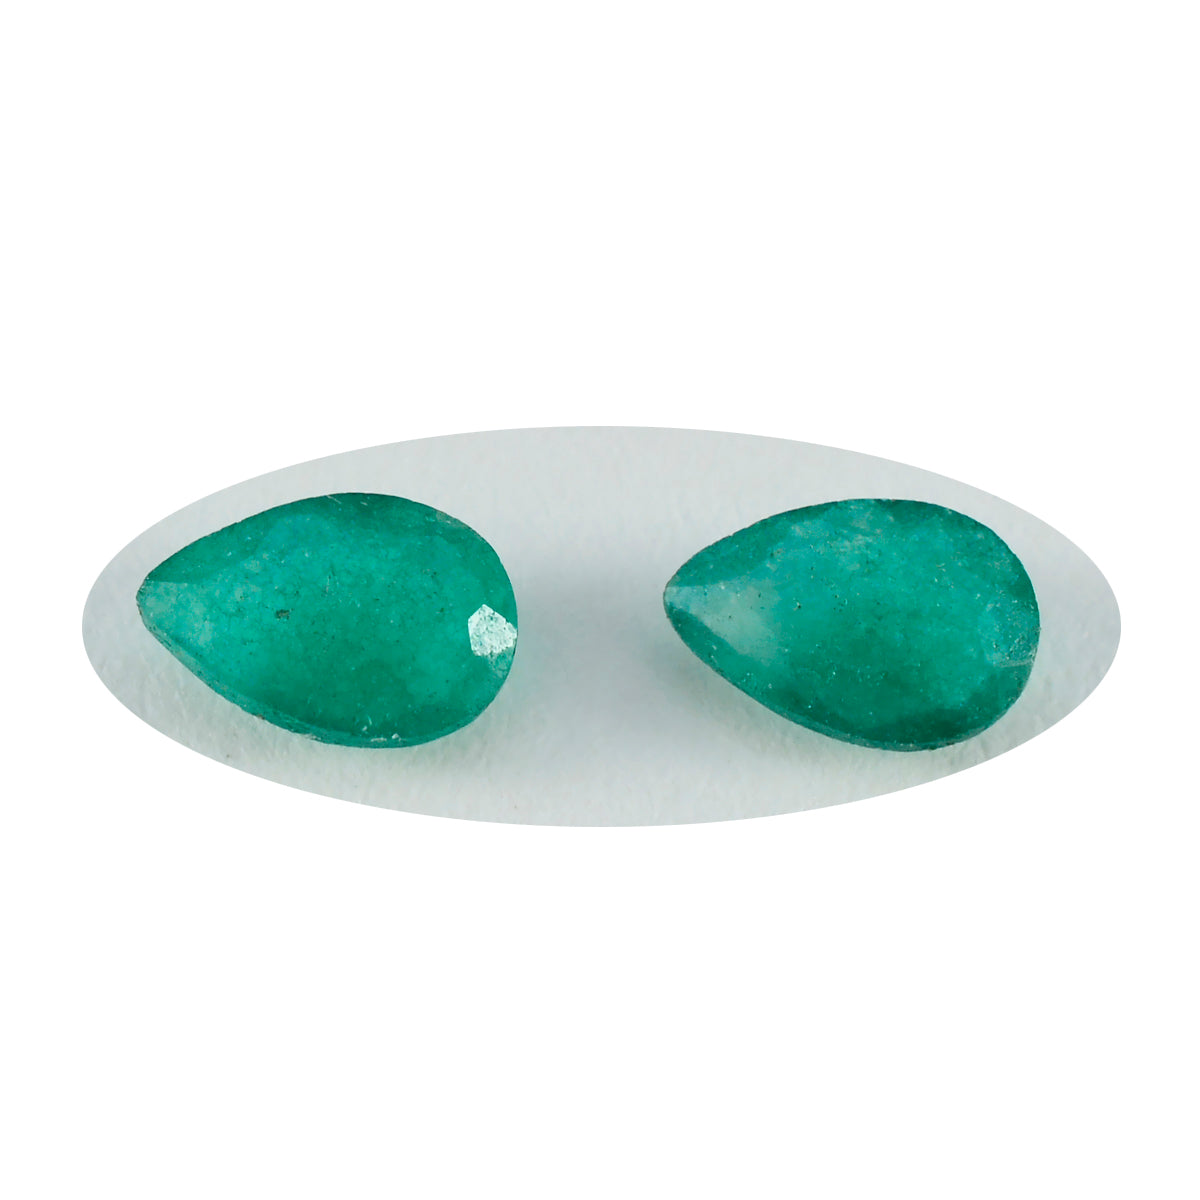 Riyogems 1 pieza jaspe verde auténtico facetado 6x9 mm forma de pera una piedra de calidad